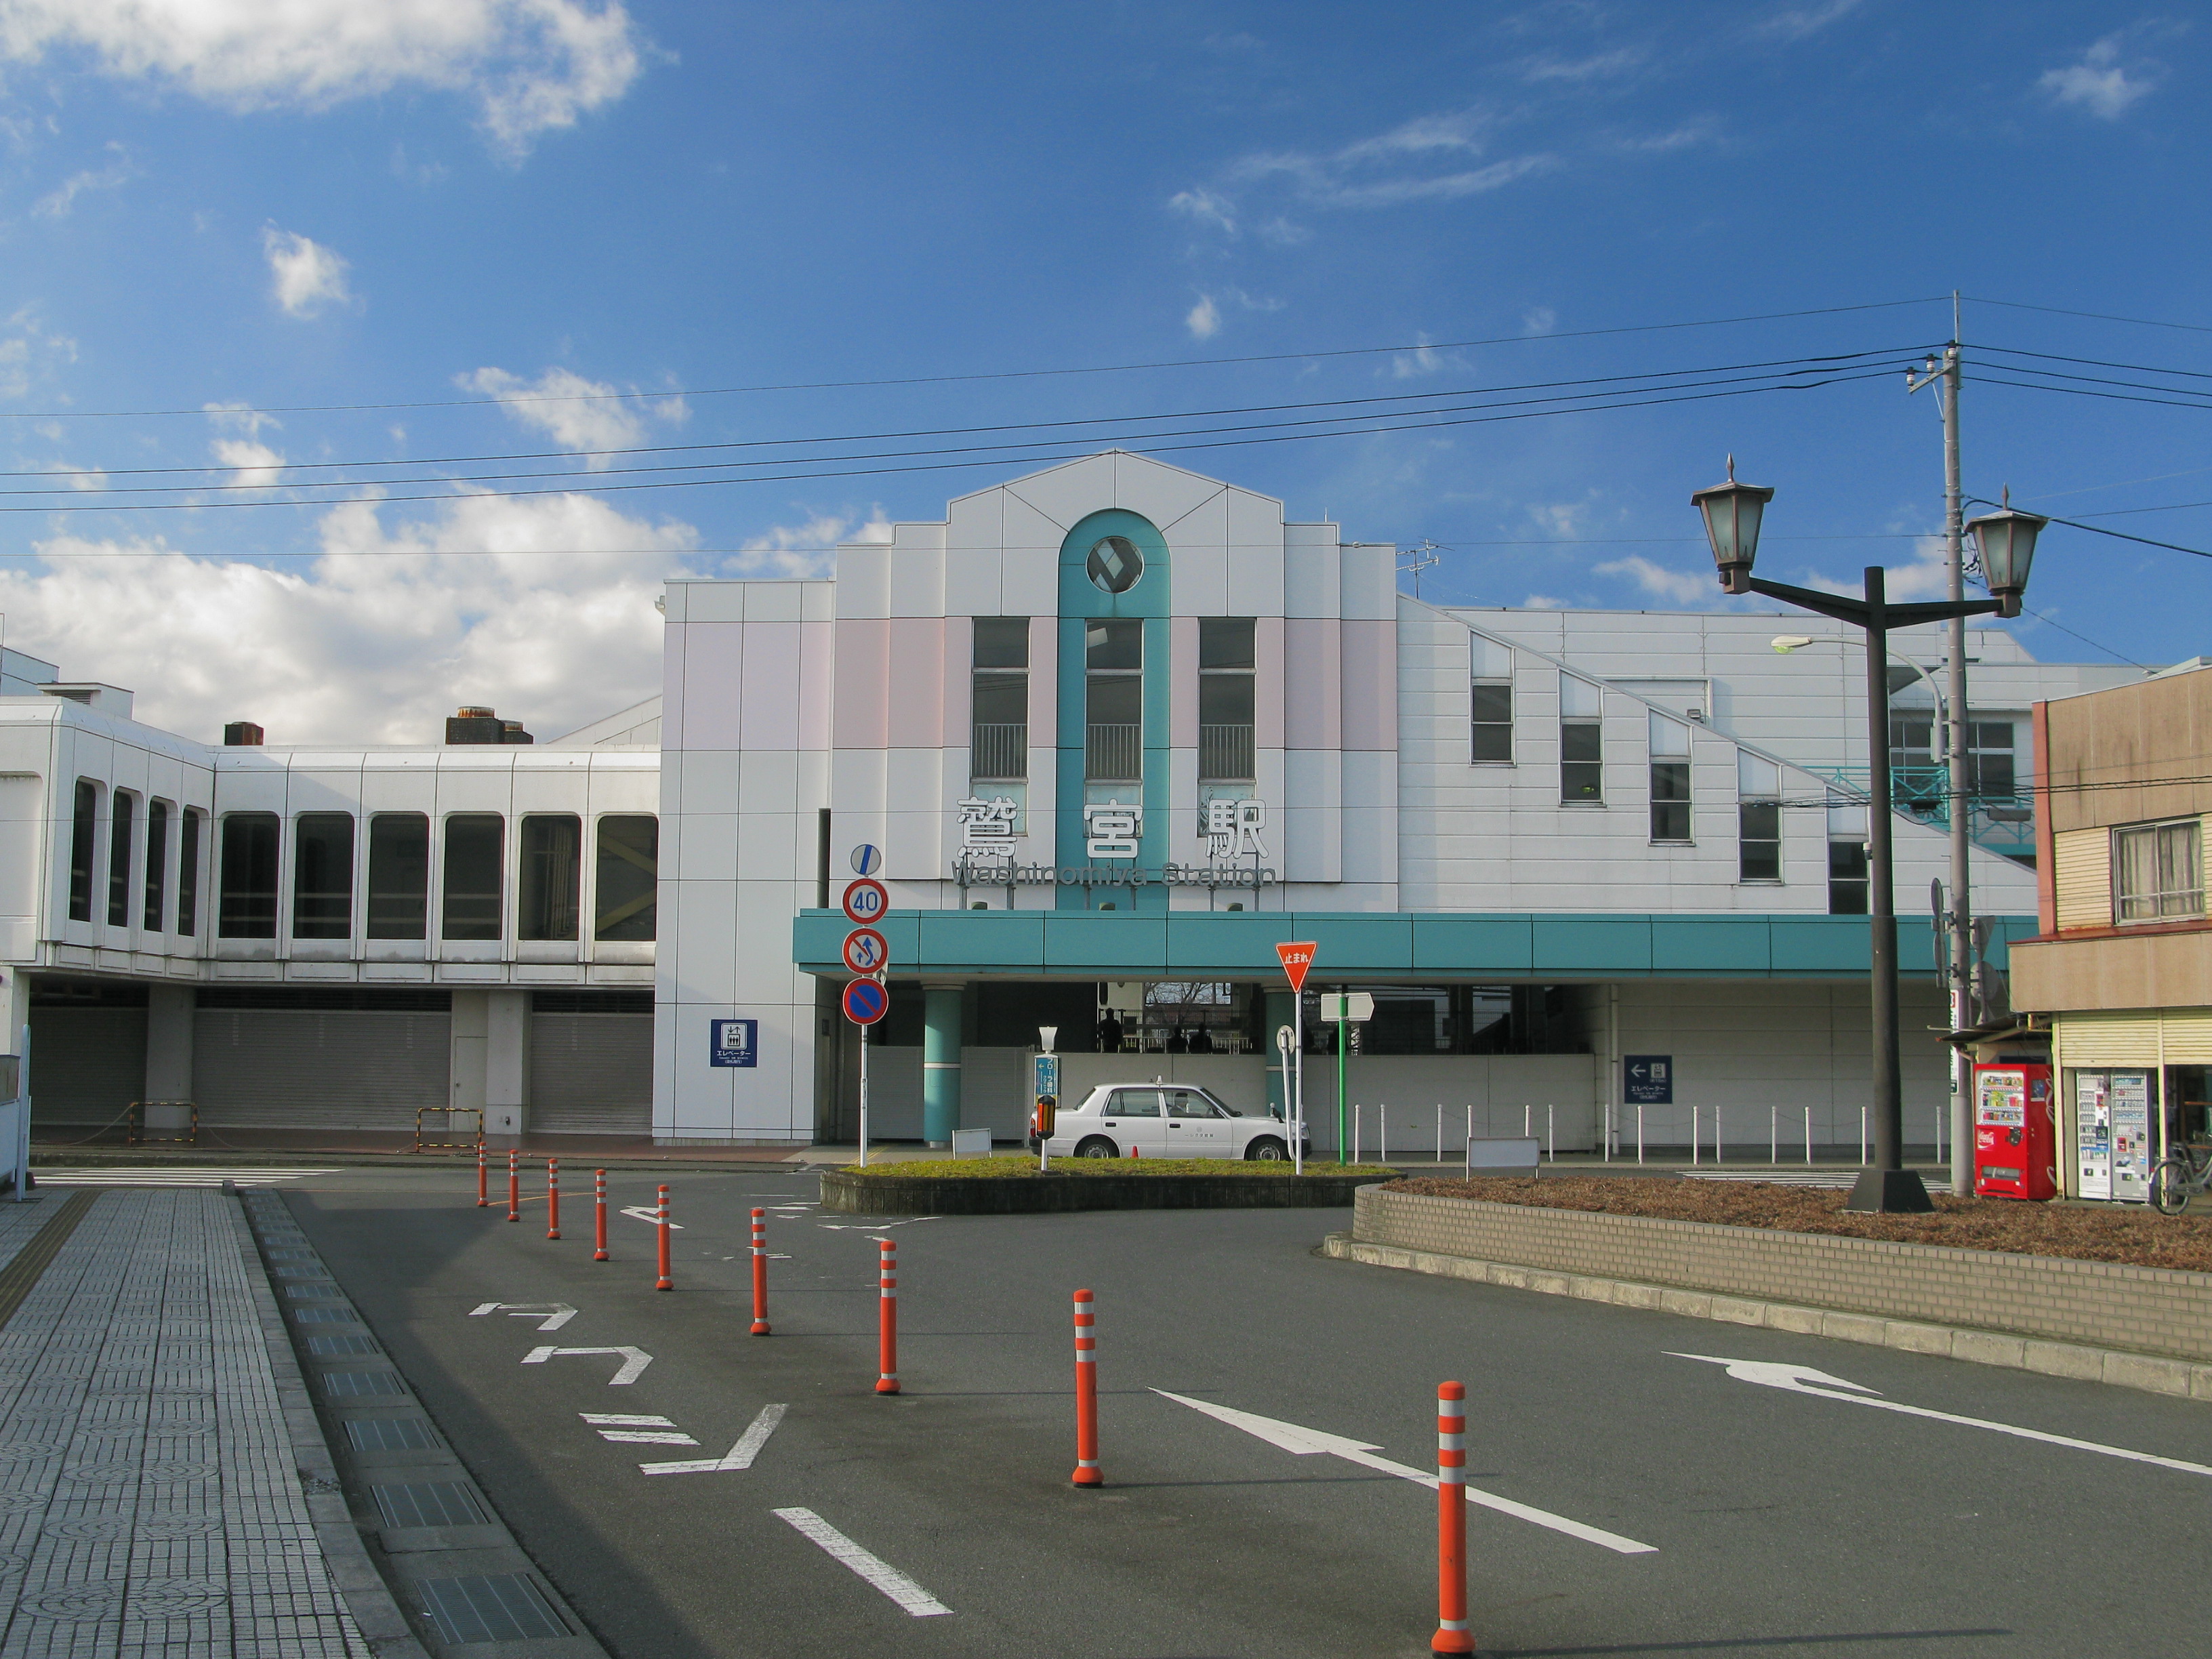 鷲宮駅 - Wikipedia